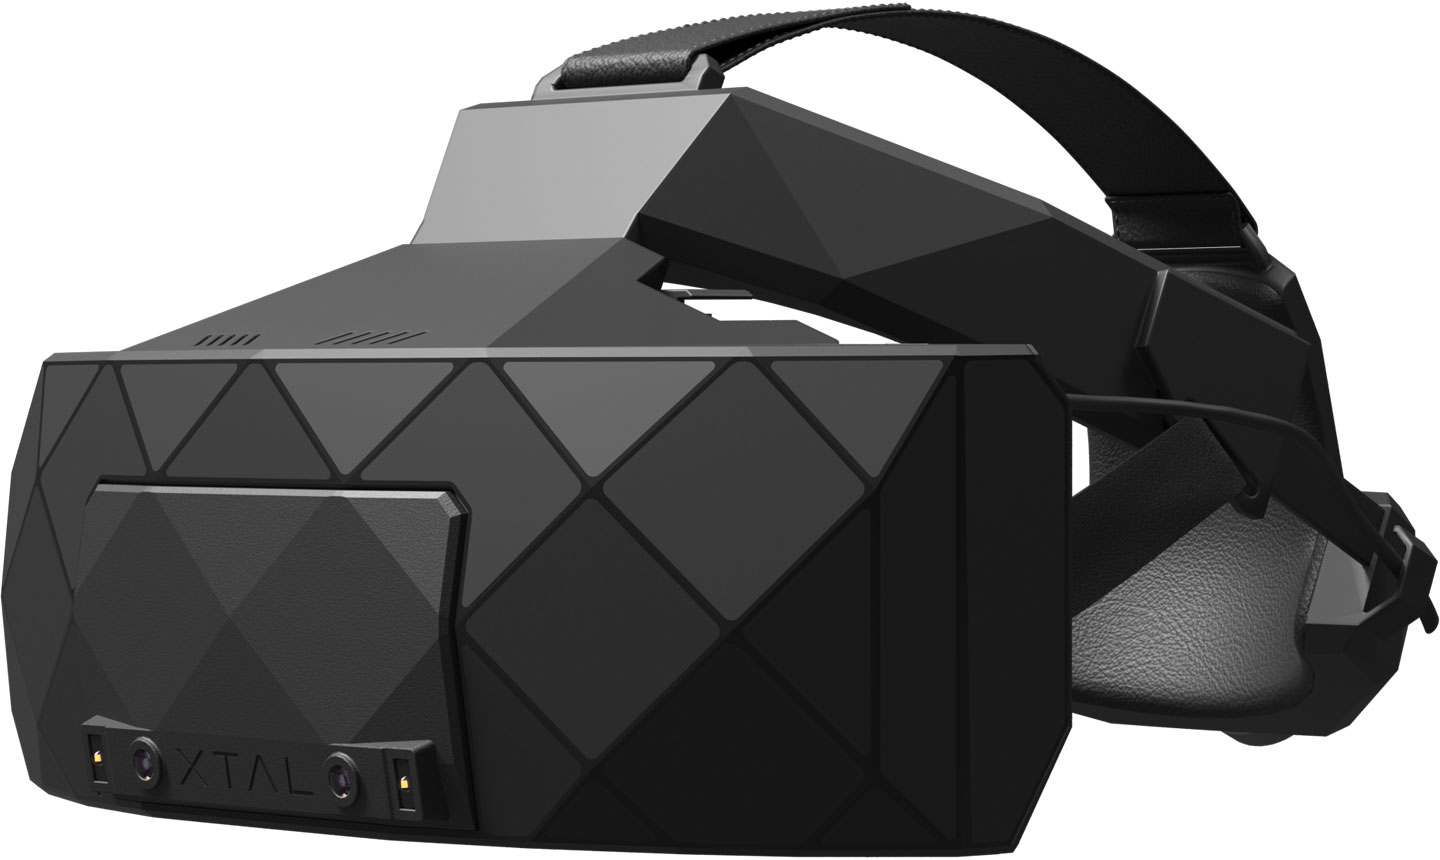 VRgineers presenta XTAL 3 el visor profesional para simuladores de